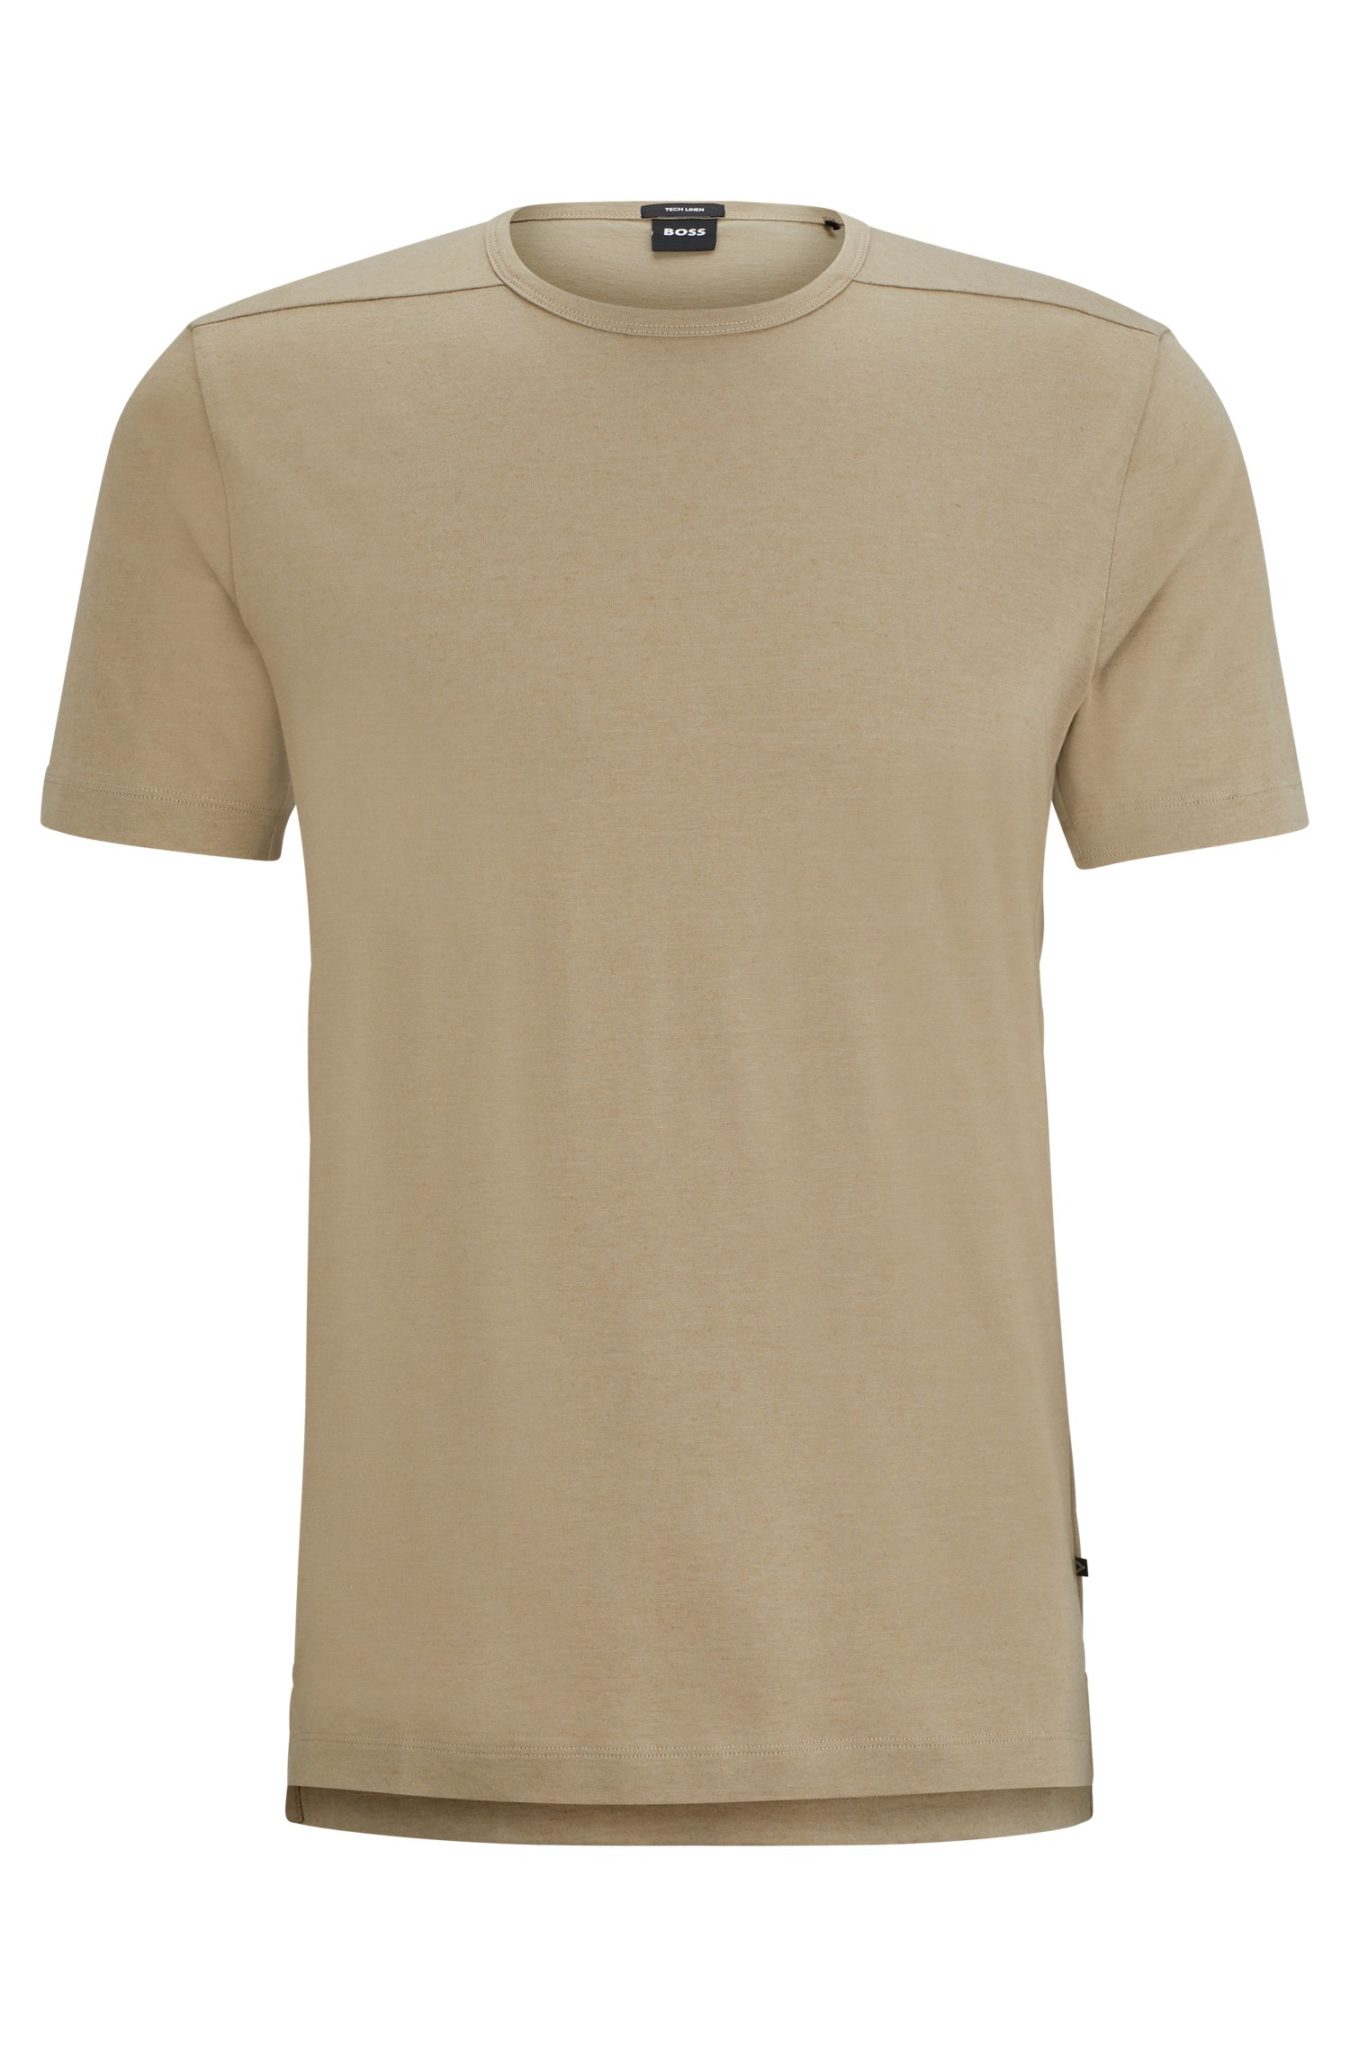 Hugo Boss T-shirt Regular Fit en coton mélangé avec coutures ergonomiques